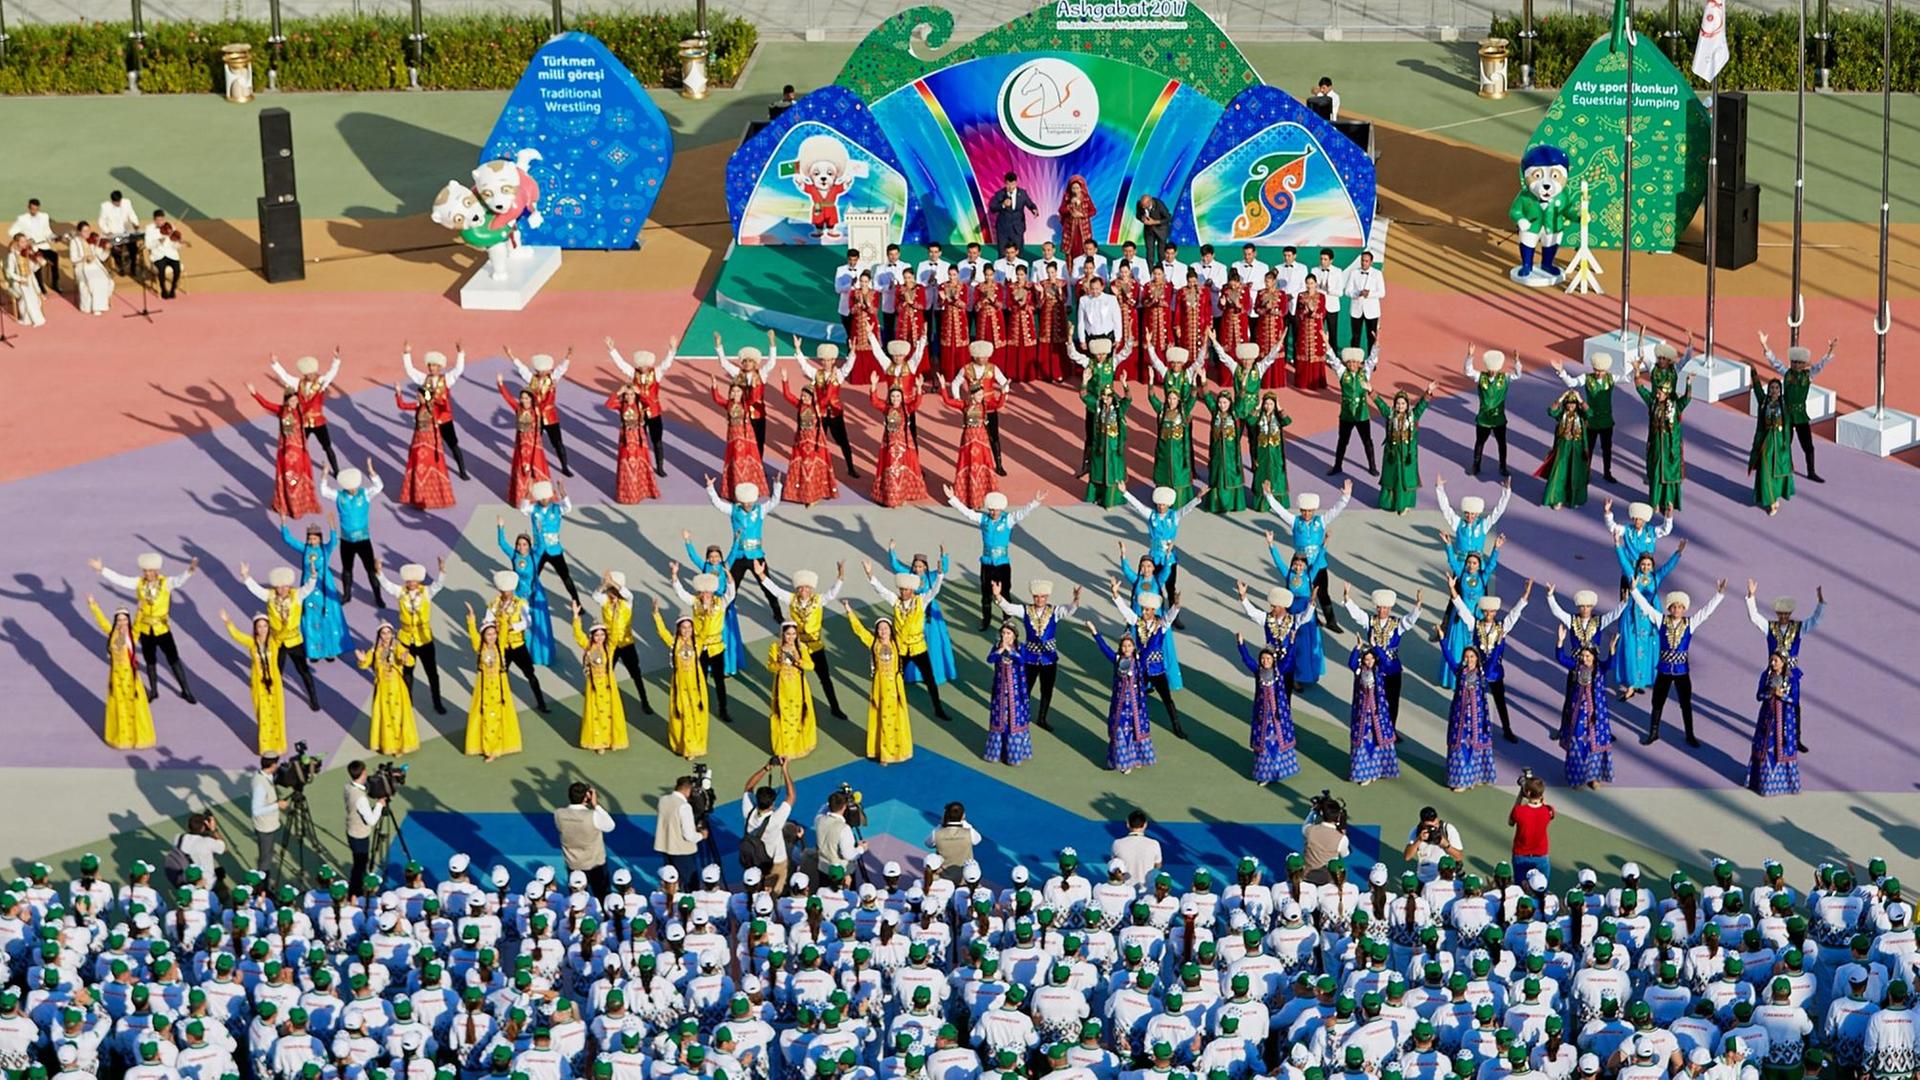 Das turkmenische Nationalteam beim Begrüßungszeremoniell der Asienspiele 2017 in Ashgabat.